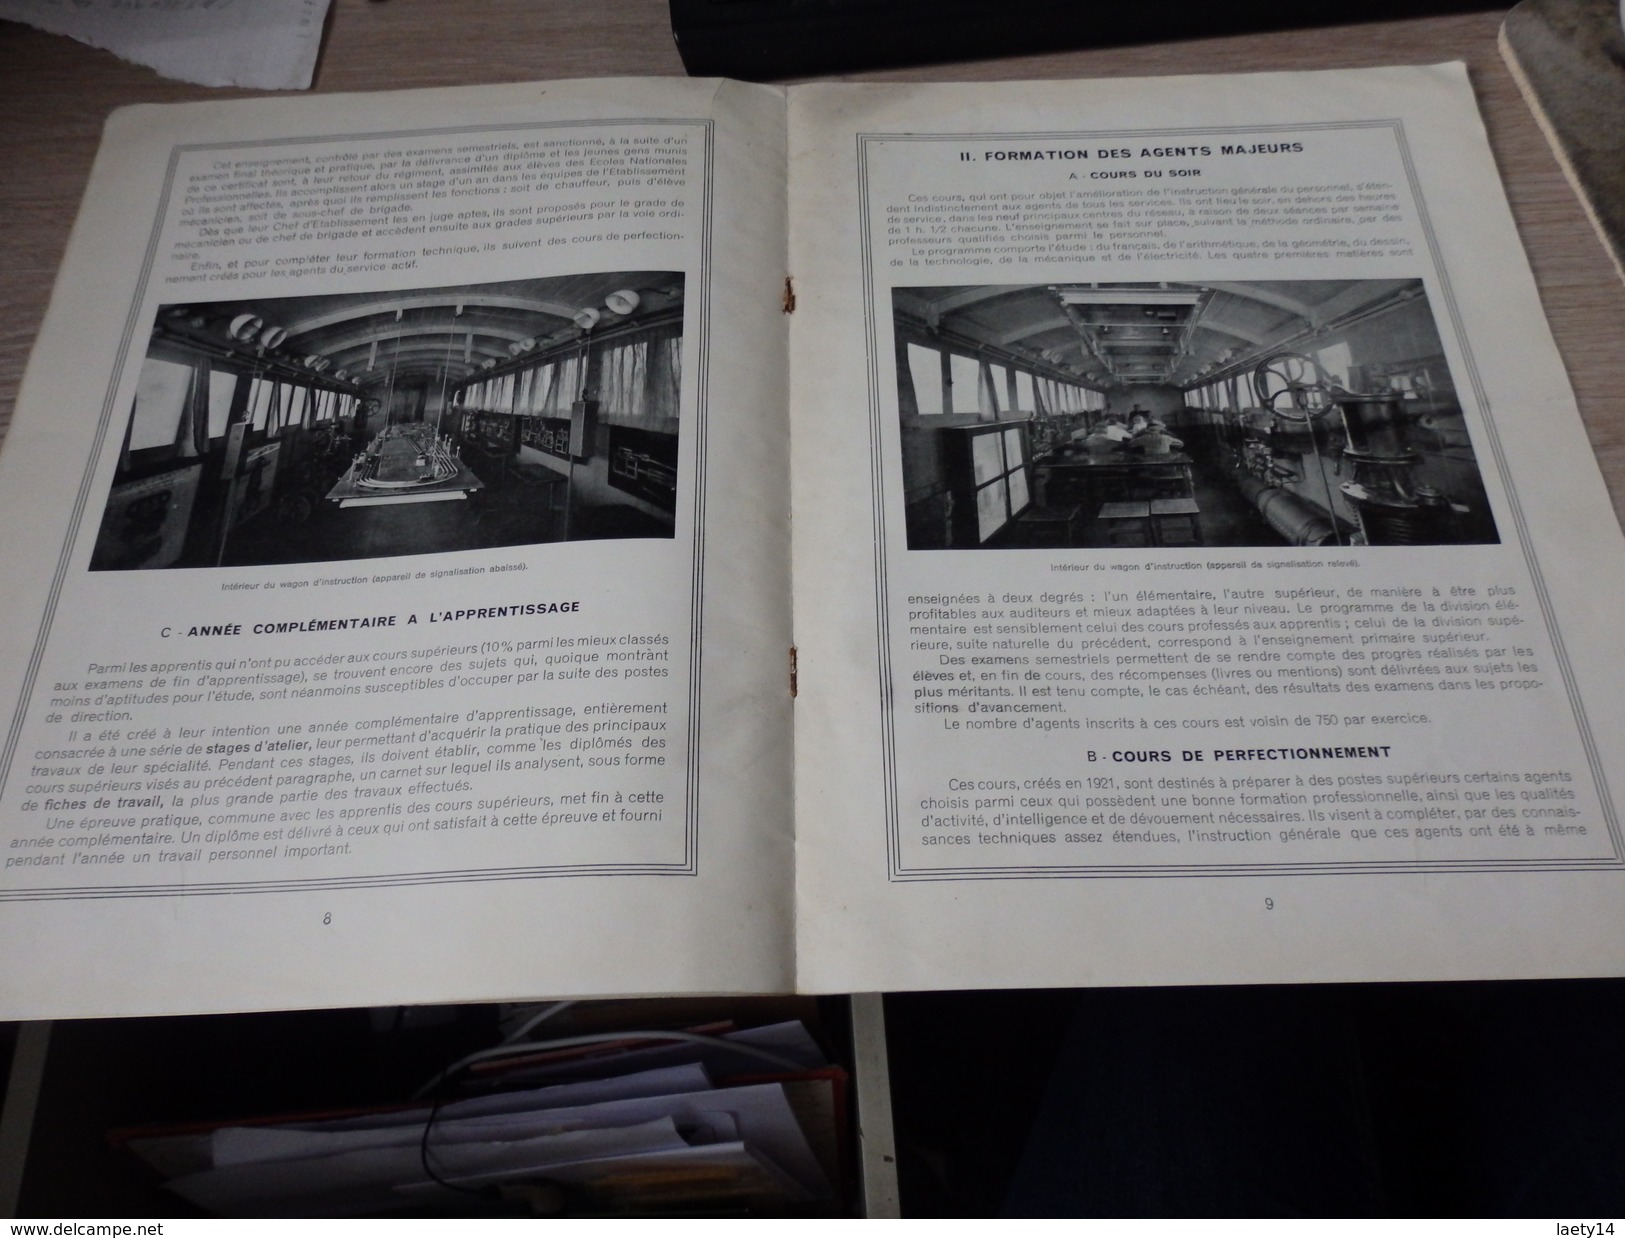 chemin de fer de paris a orleans enseignement technique exposition coloniale 1931